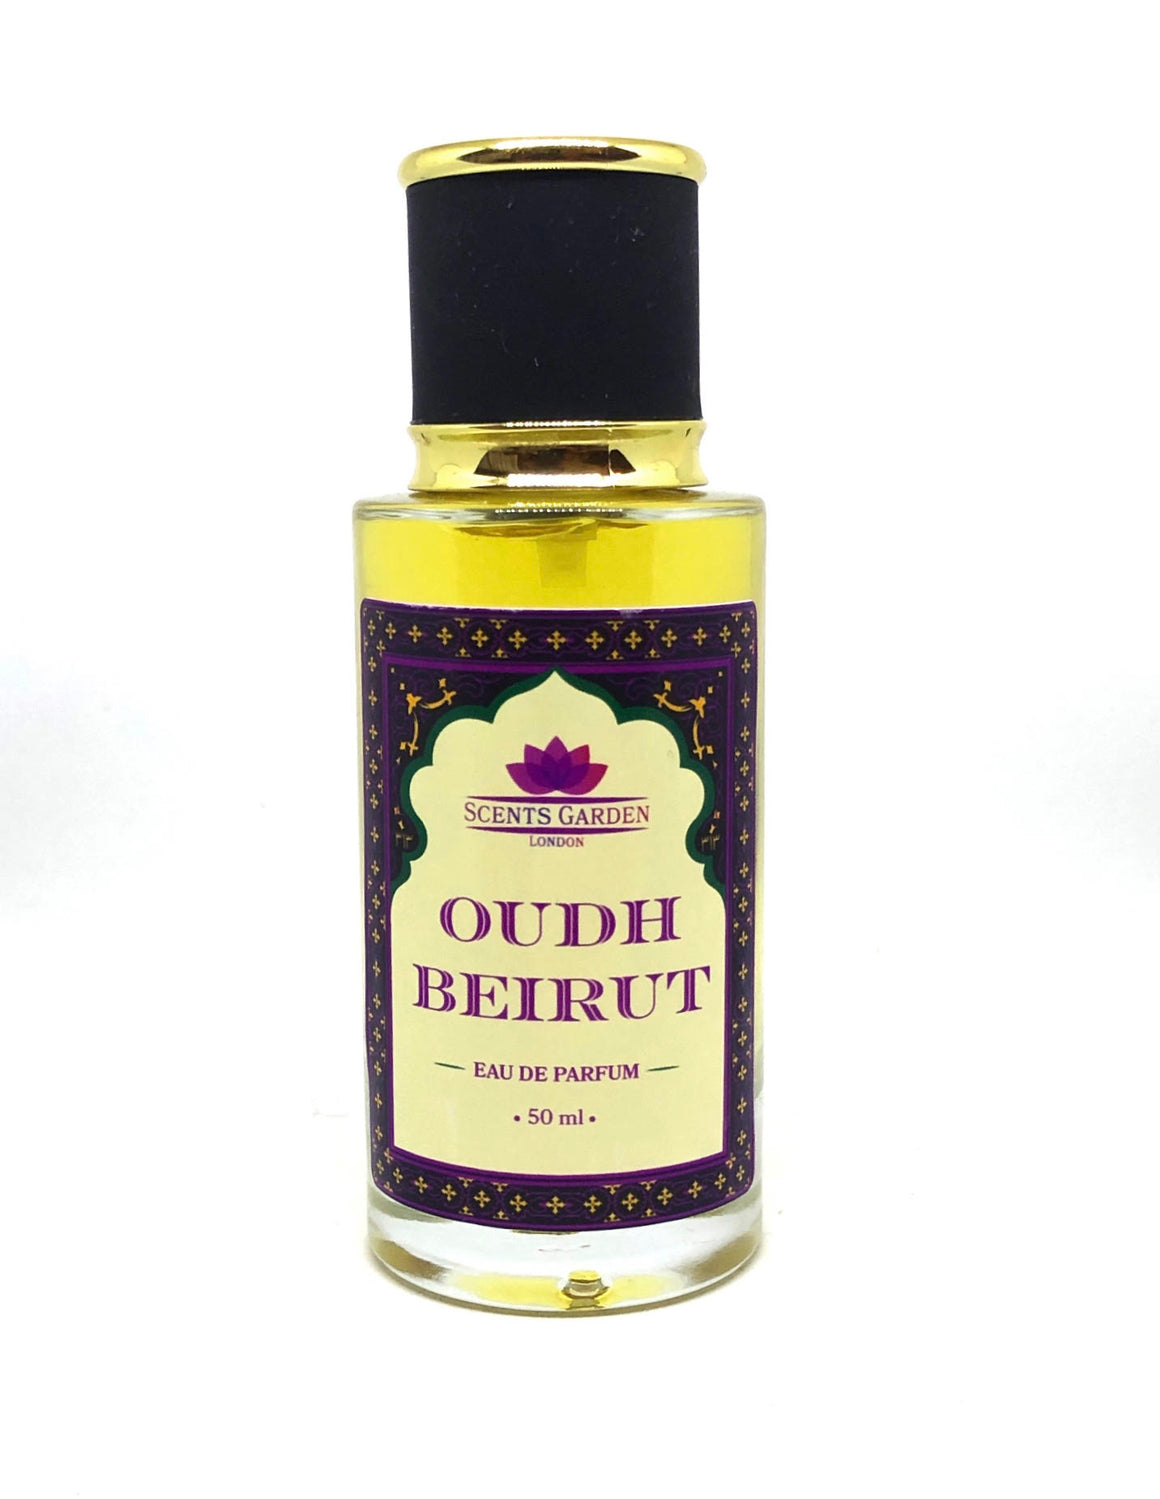 Oudh Beirut Eau De Parfum 50 ml - Spray Perfume